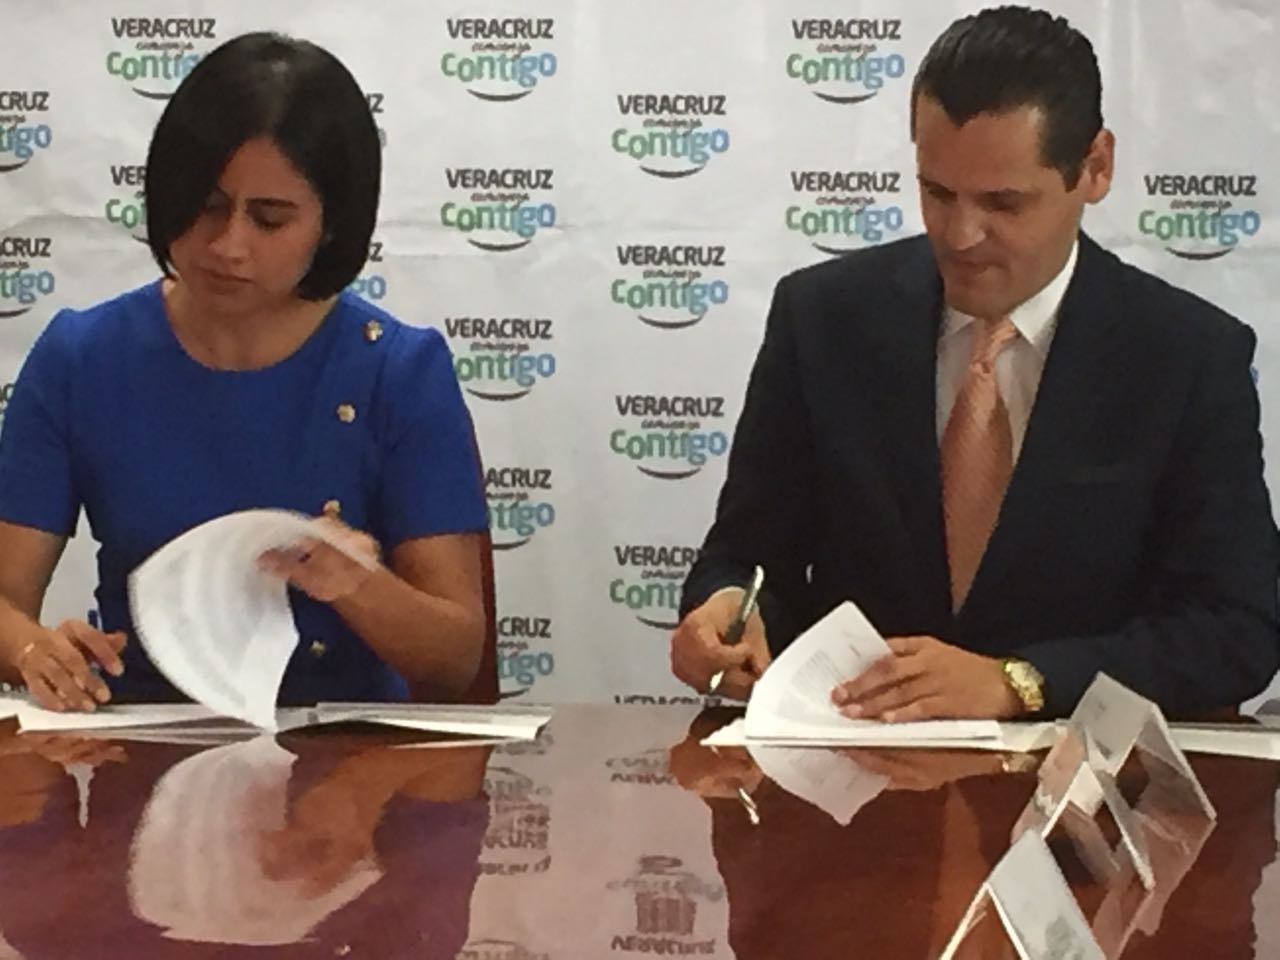 Sedesol Veracruz ha presentado siete denuncias penales por desvíos de recursos